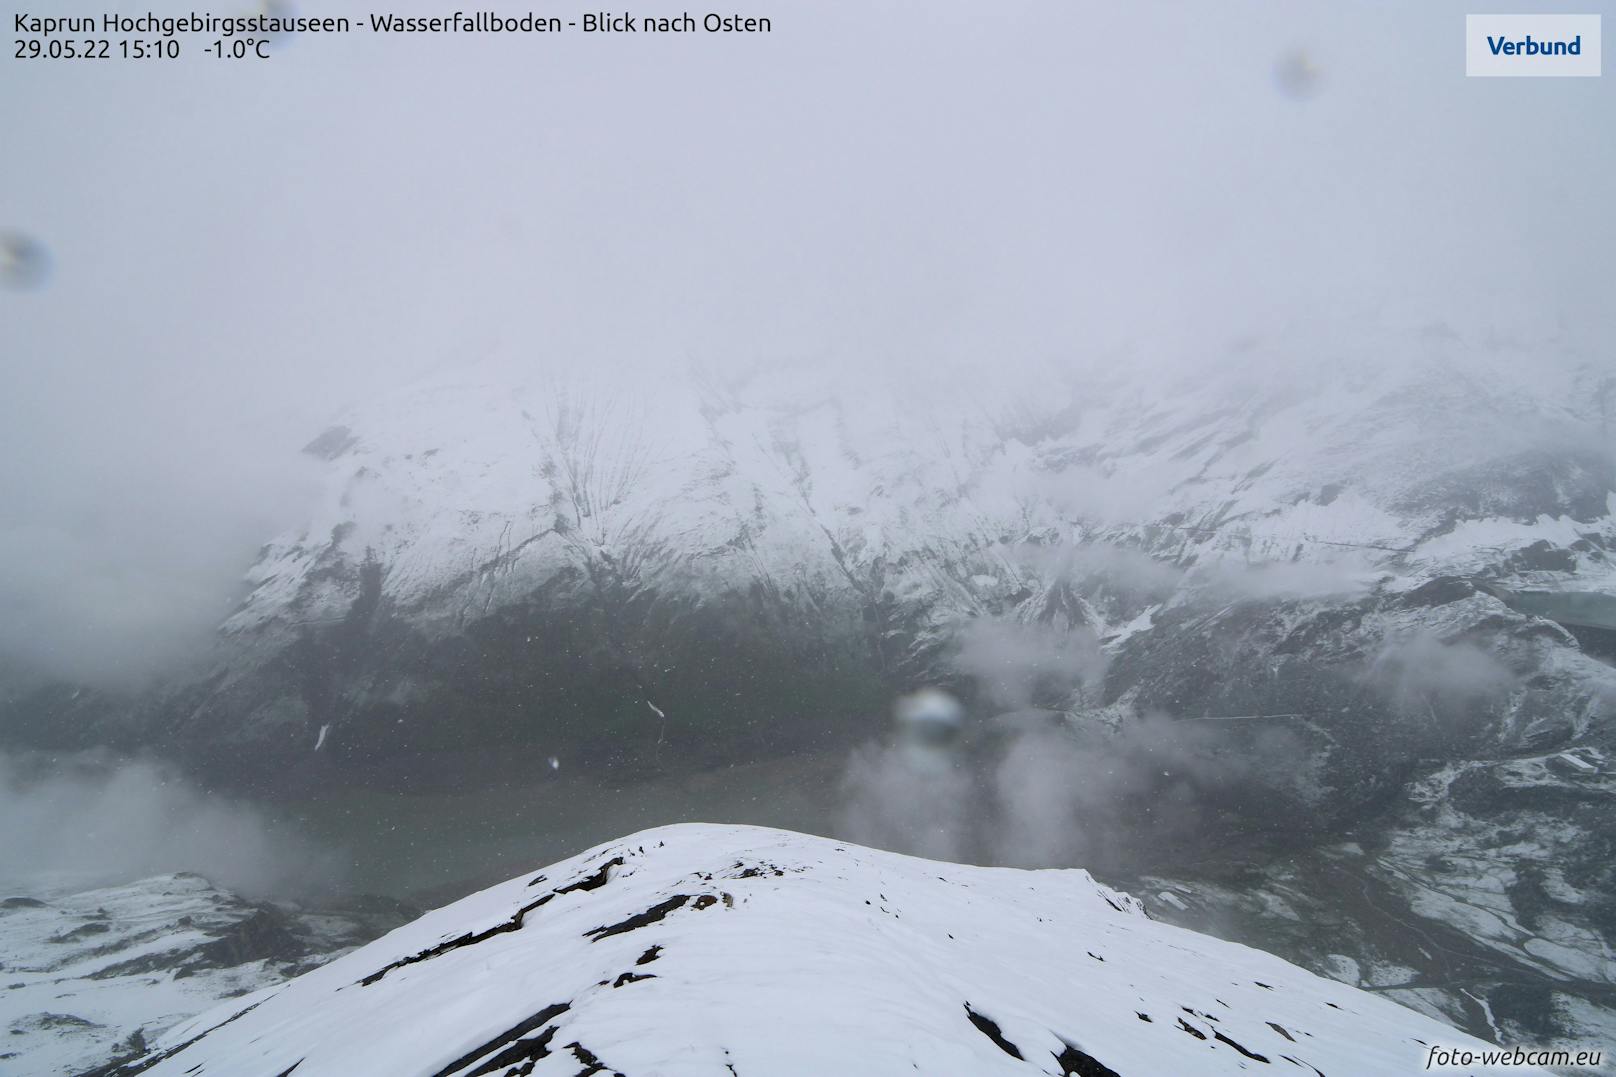 Schneefall auch bei den Kaprun Hochgebirgsstauseen. Der Ausblick am 29. Mai und...